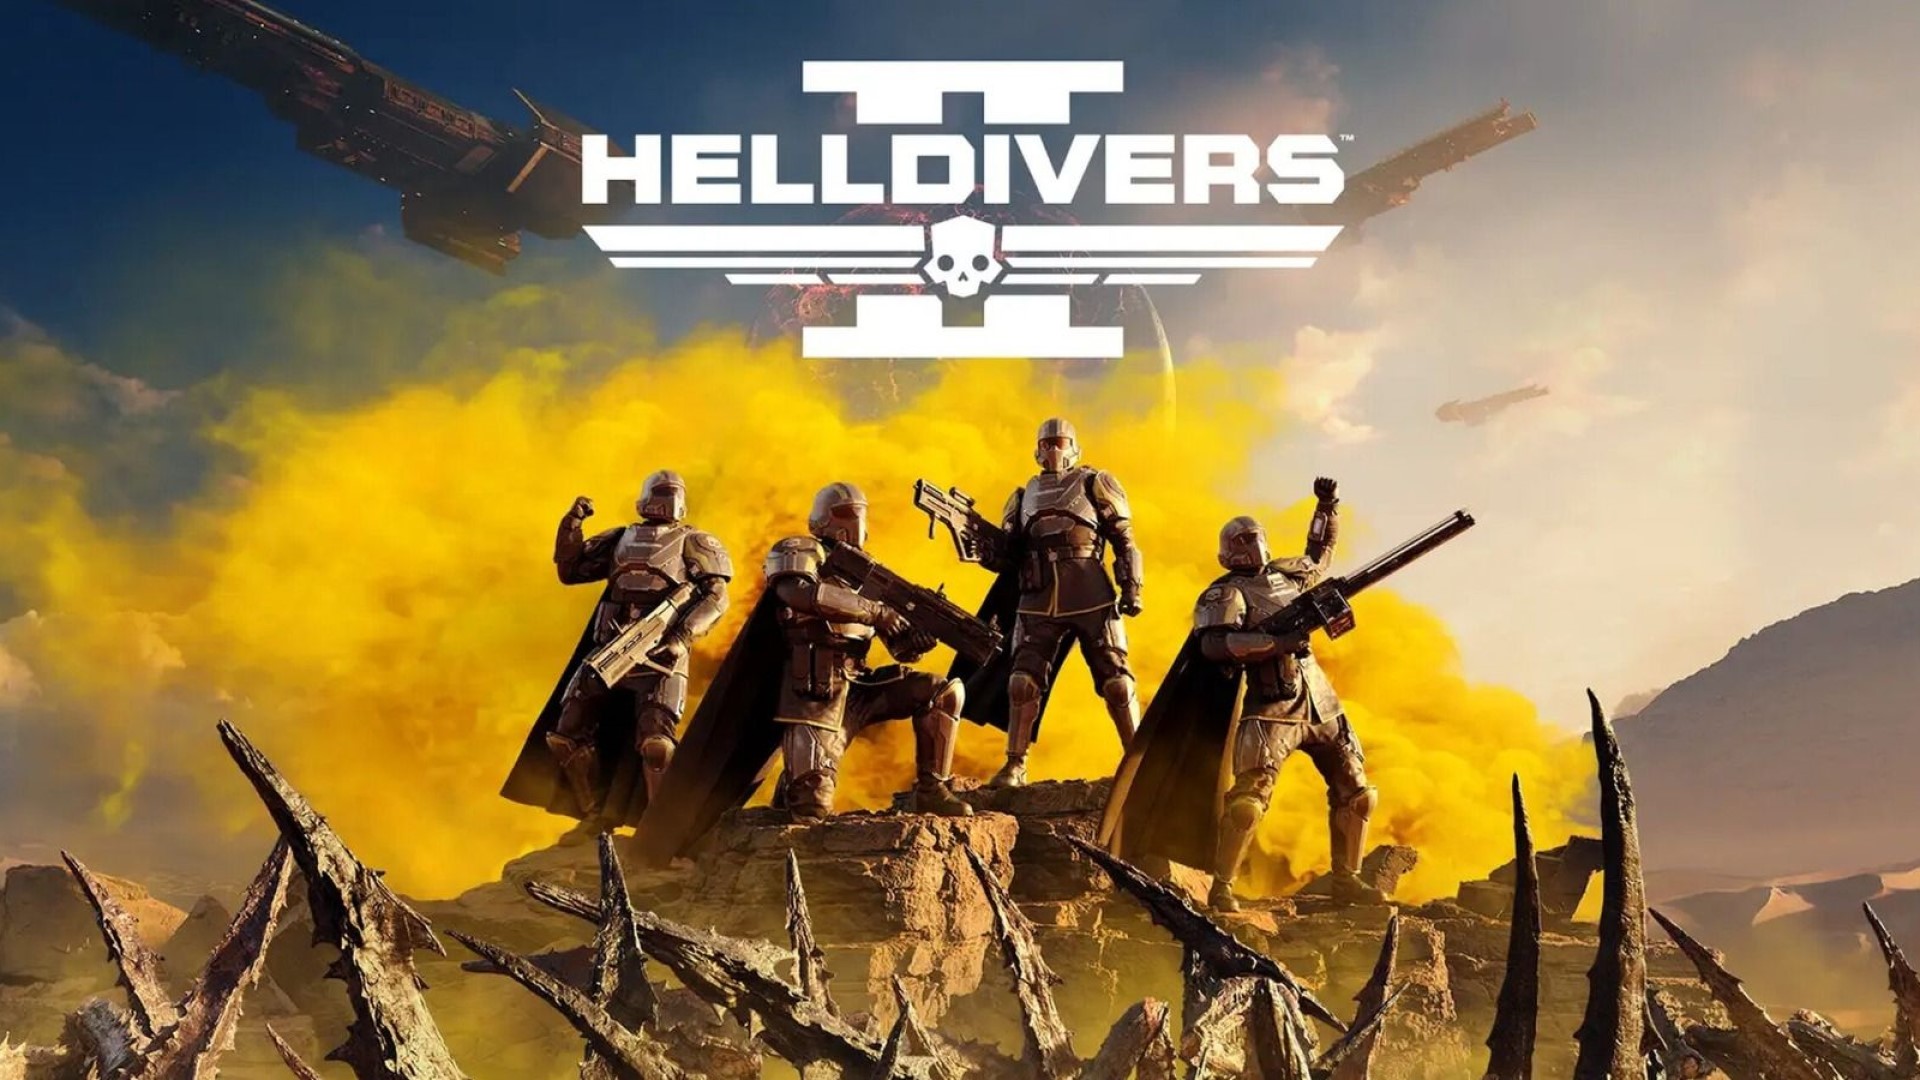 Кількість проданих копій Helldivers 2, ймовірно, зросла до восьми мільйонів